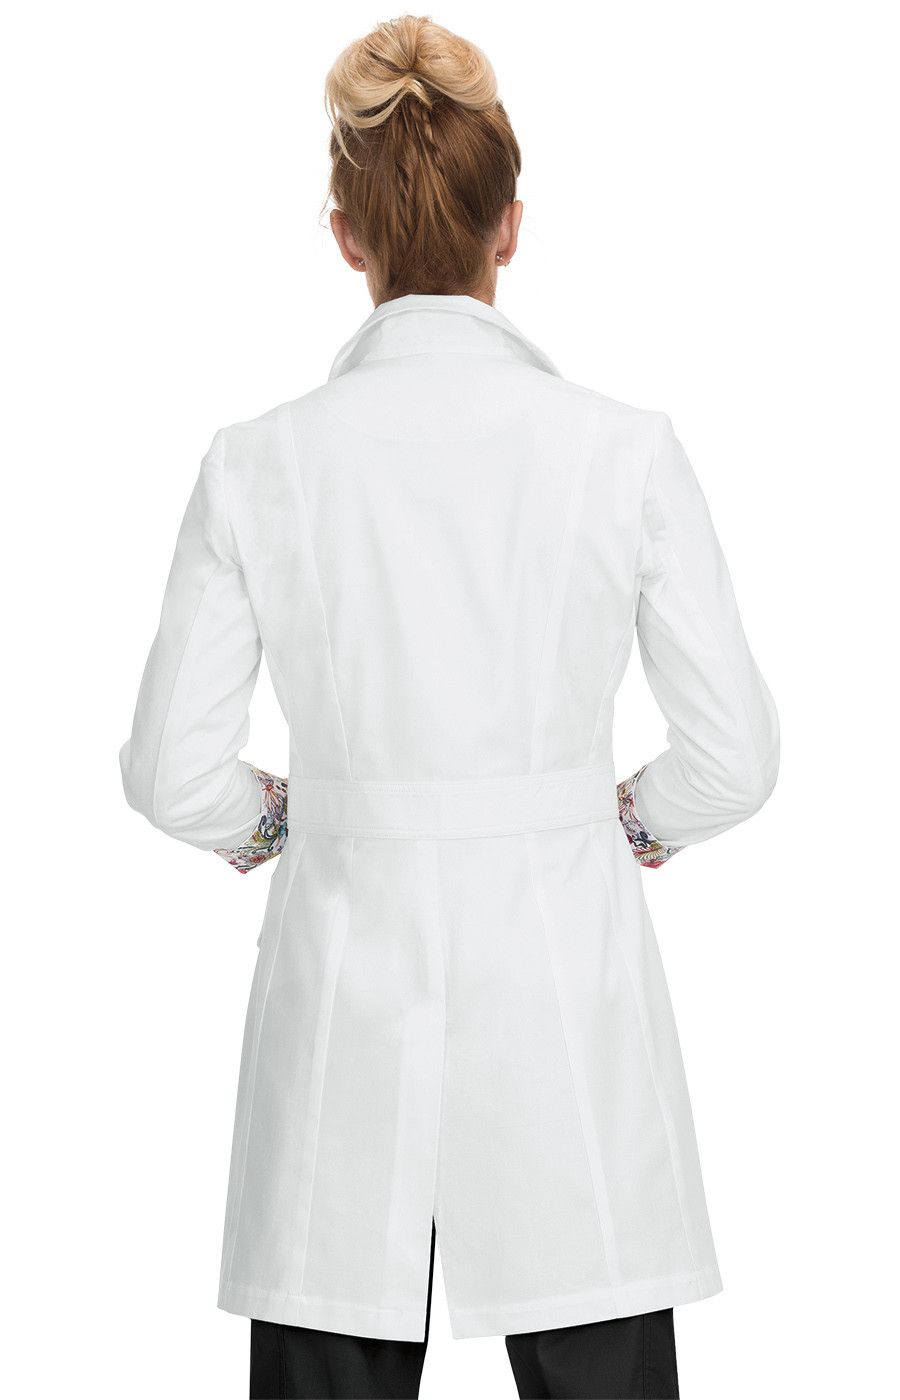 geneva-lab-coat-white